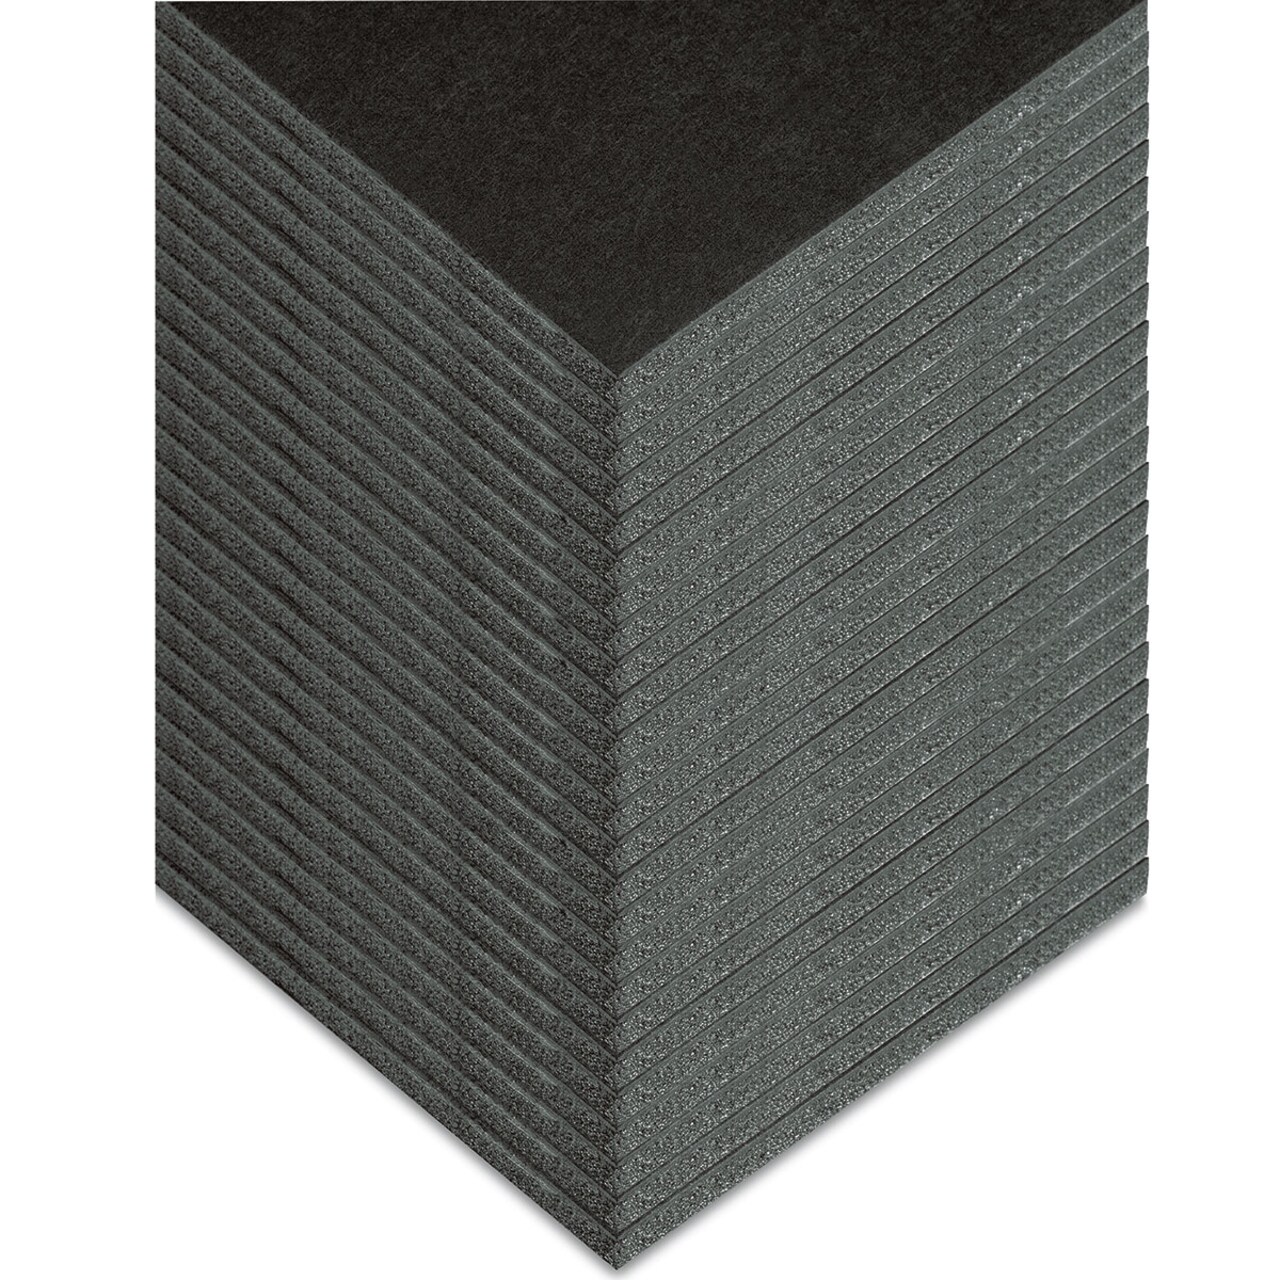 Blackcore Foam Board Pack - 24 x 36 x 3/16, Black, Pkg of 25